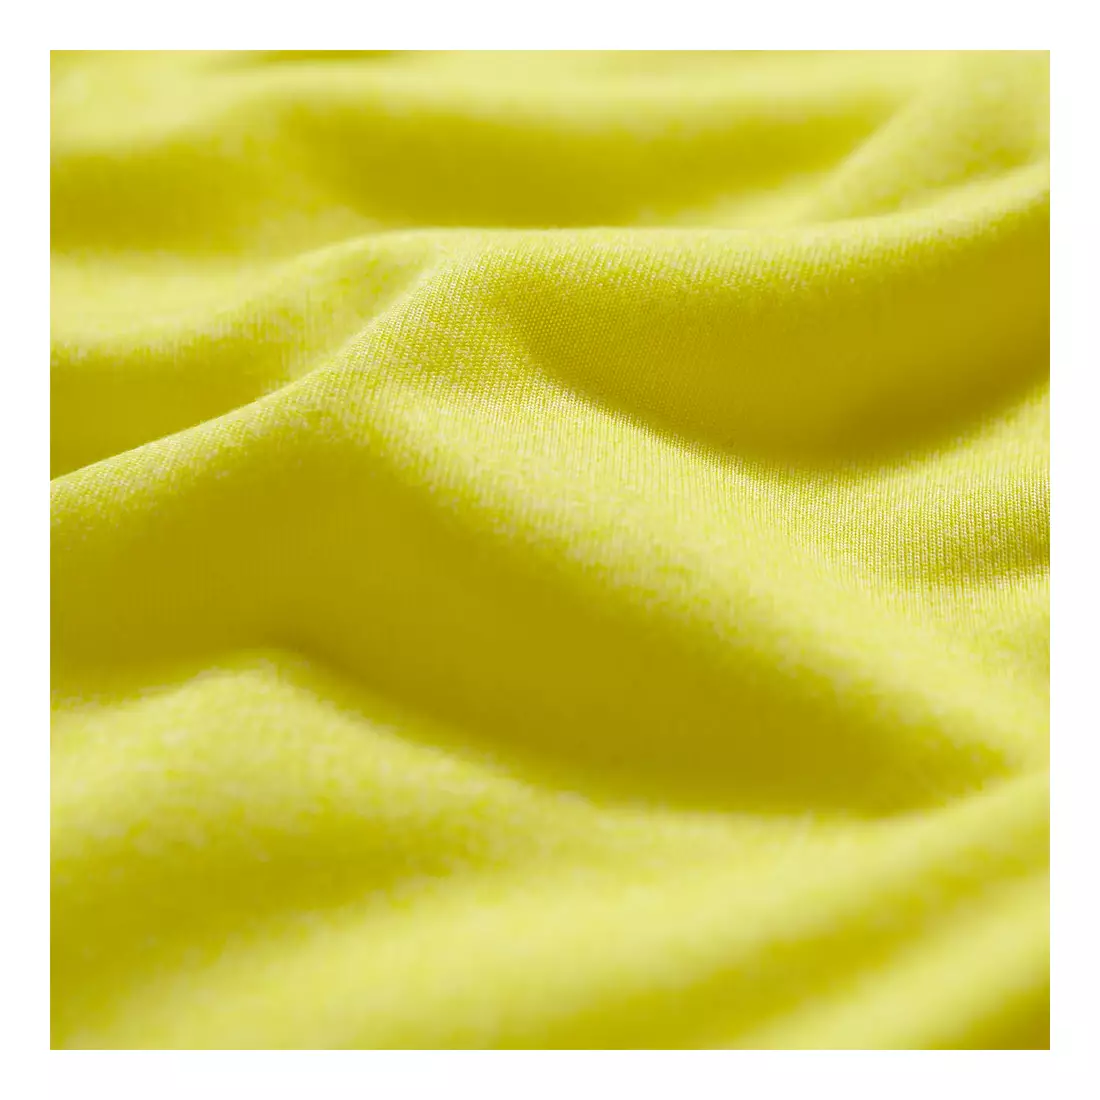 ASICS 110520-0396 SOUKAI 1/2 ZIP HOODIE - férfi kapucnis póló, szín: sárga